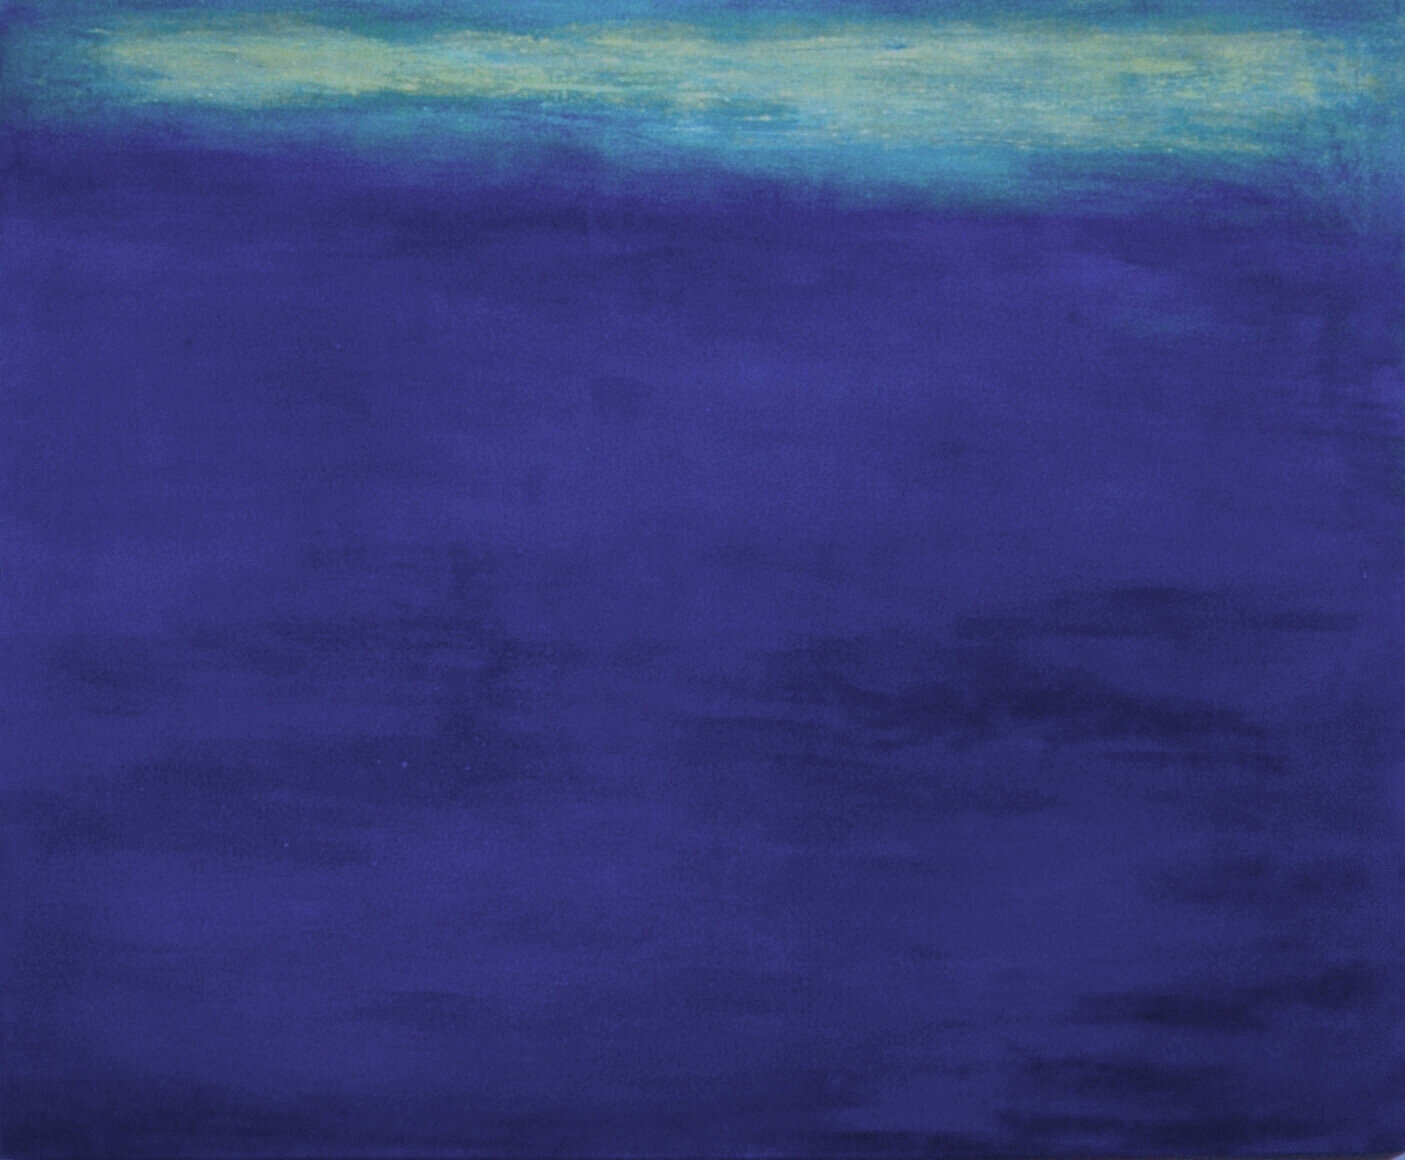  Deep, 2003, oil on canvas 5’ x 6’ /152 cm x 183cm  